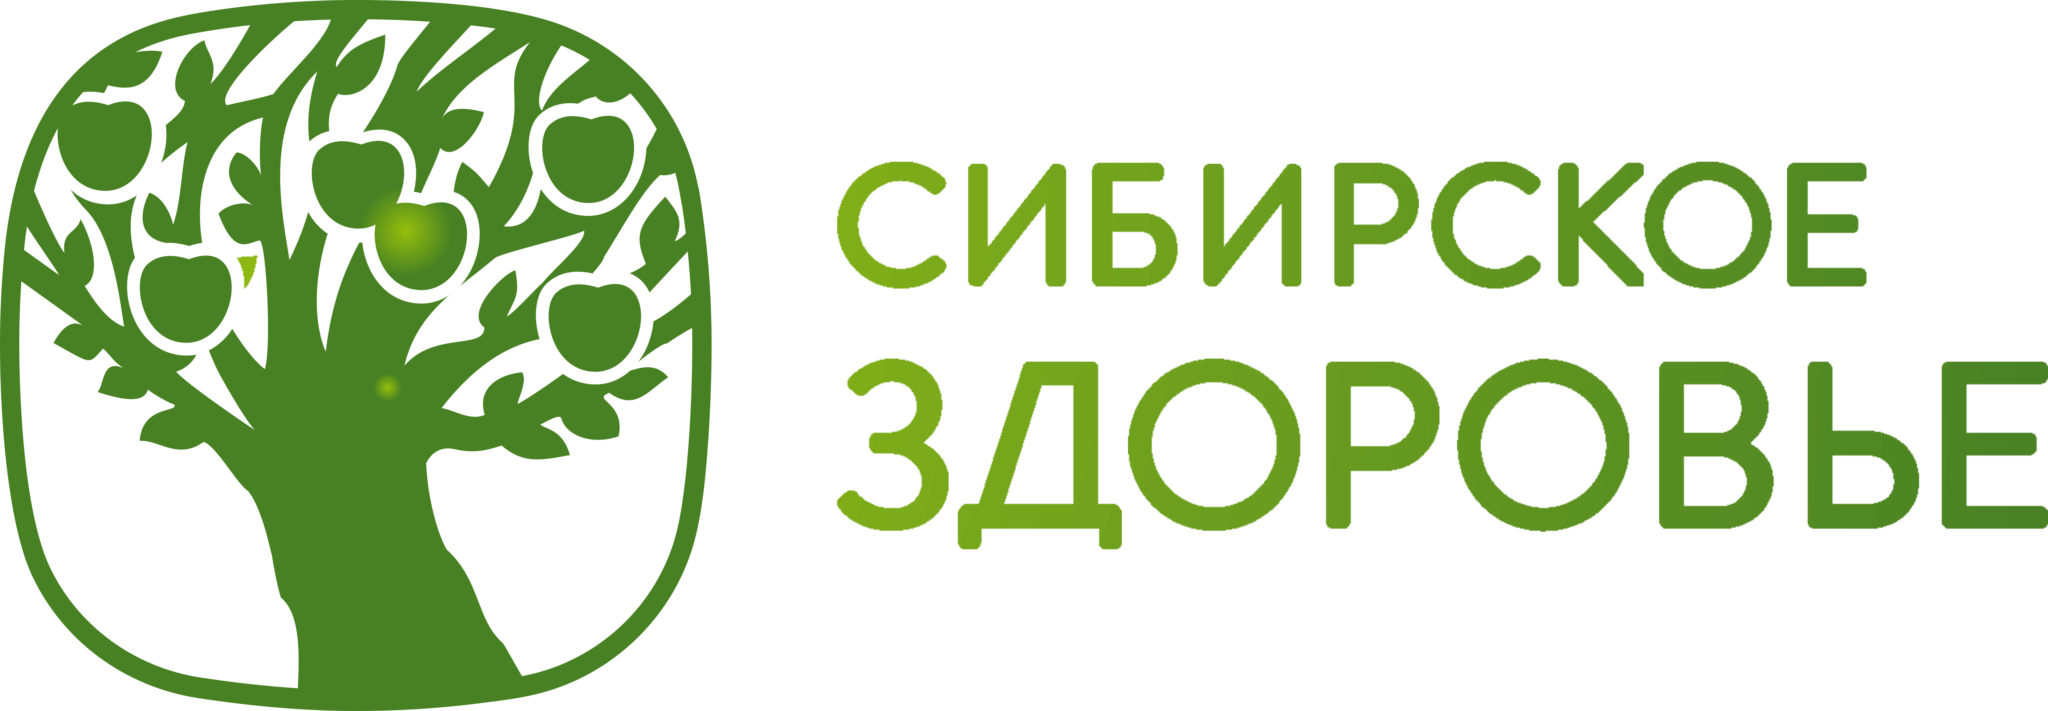 Ооо область здоровья. Сибирское здоровье логотип. Логотип корпорации Сибирское здоровье. Сибирское здоровье Siberian Wellness логотип. Сибирское здоровье логотип PNG.